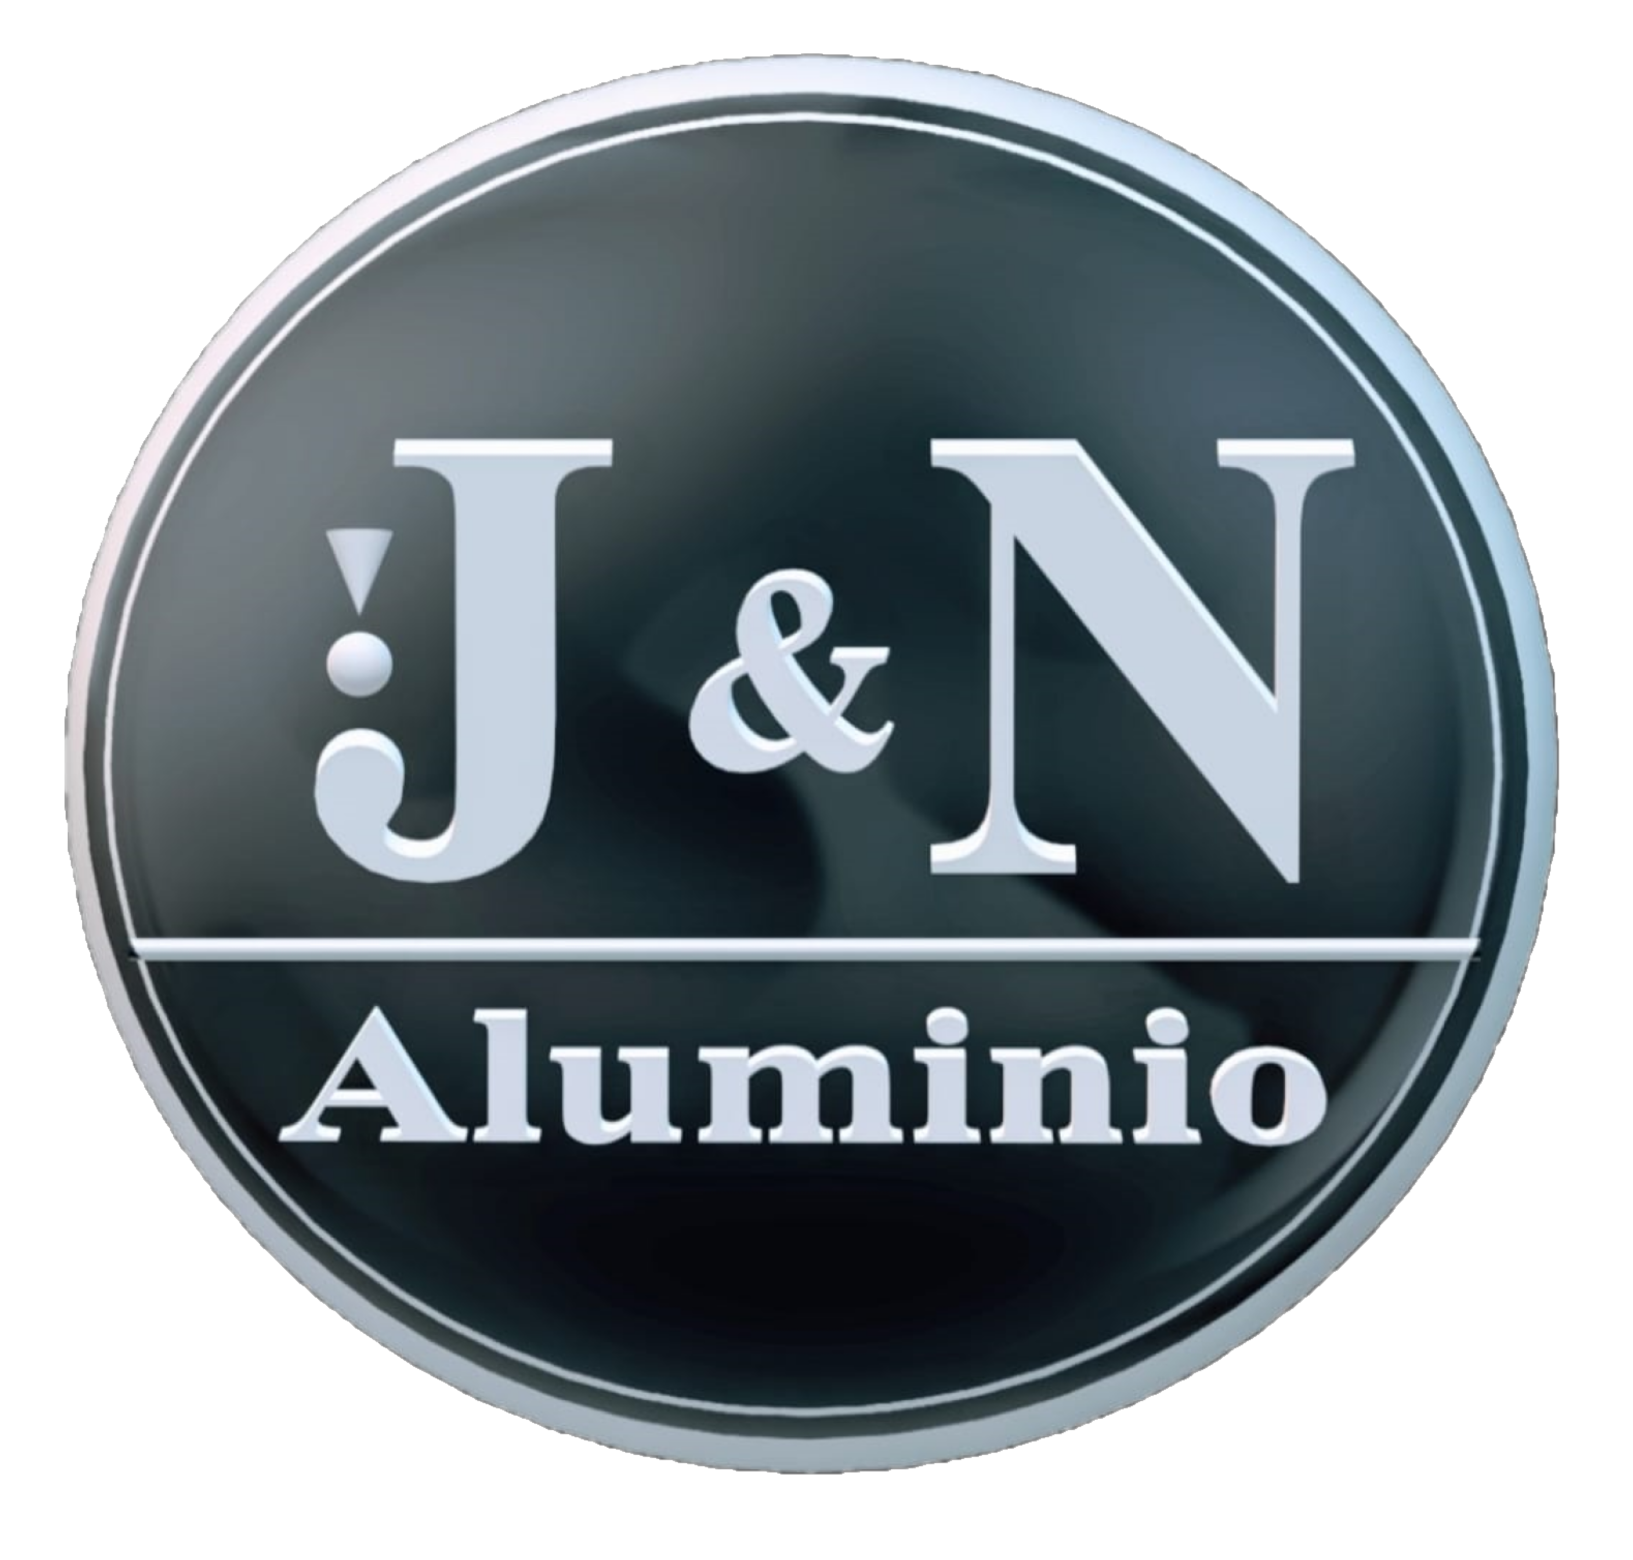 (c) Jnaluminio.com.ar